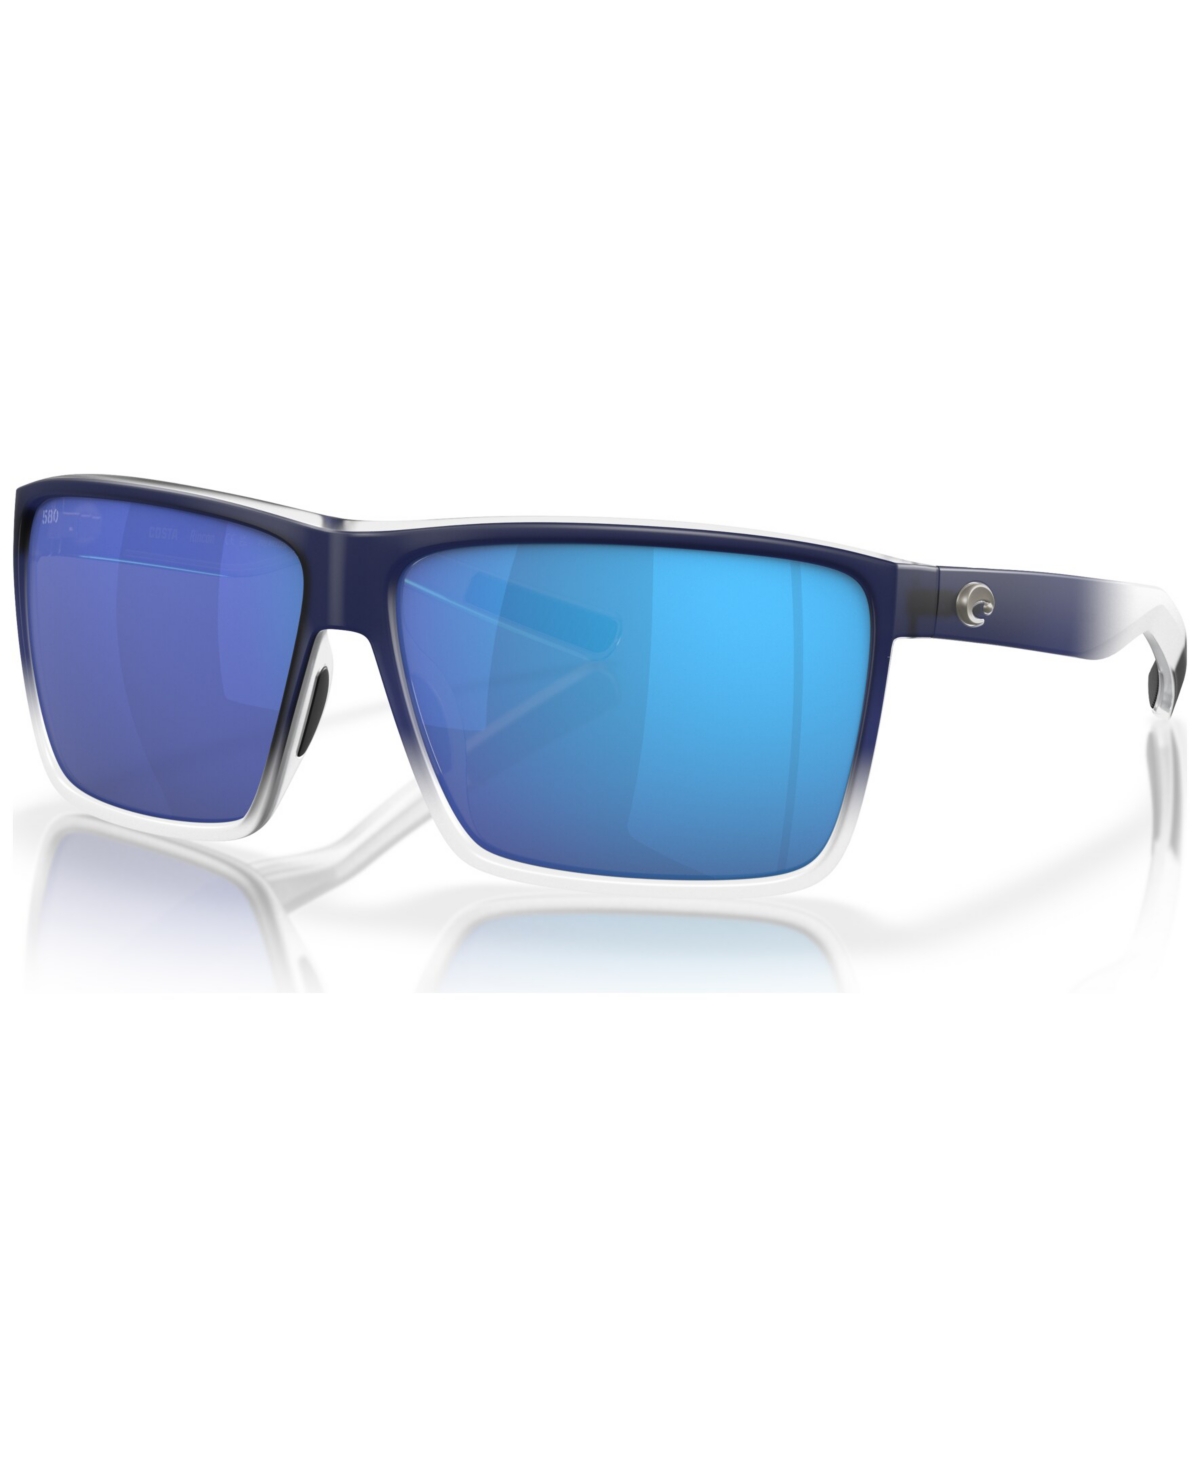 Men's Polarized Sunglasses, Rincon - Matte Blue Fade